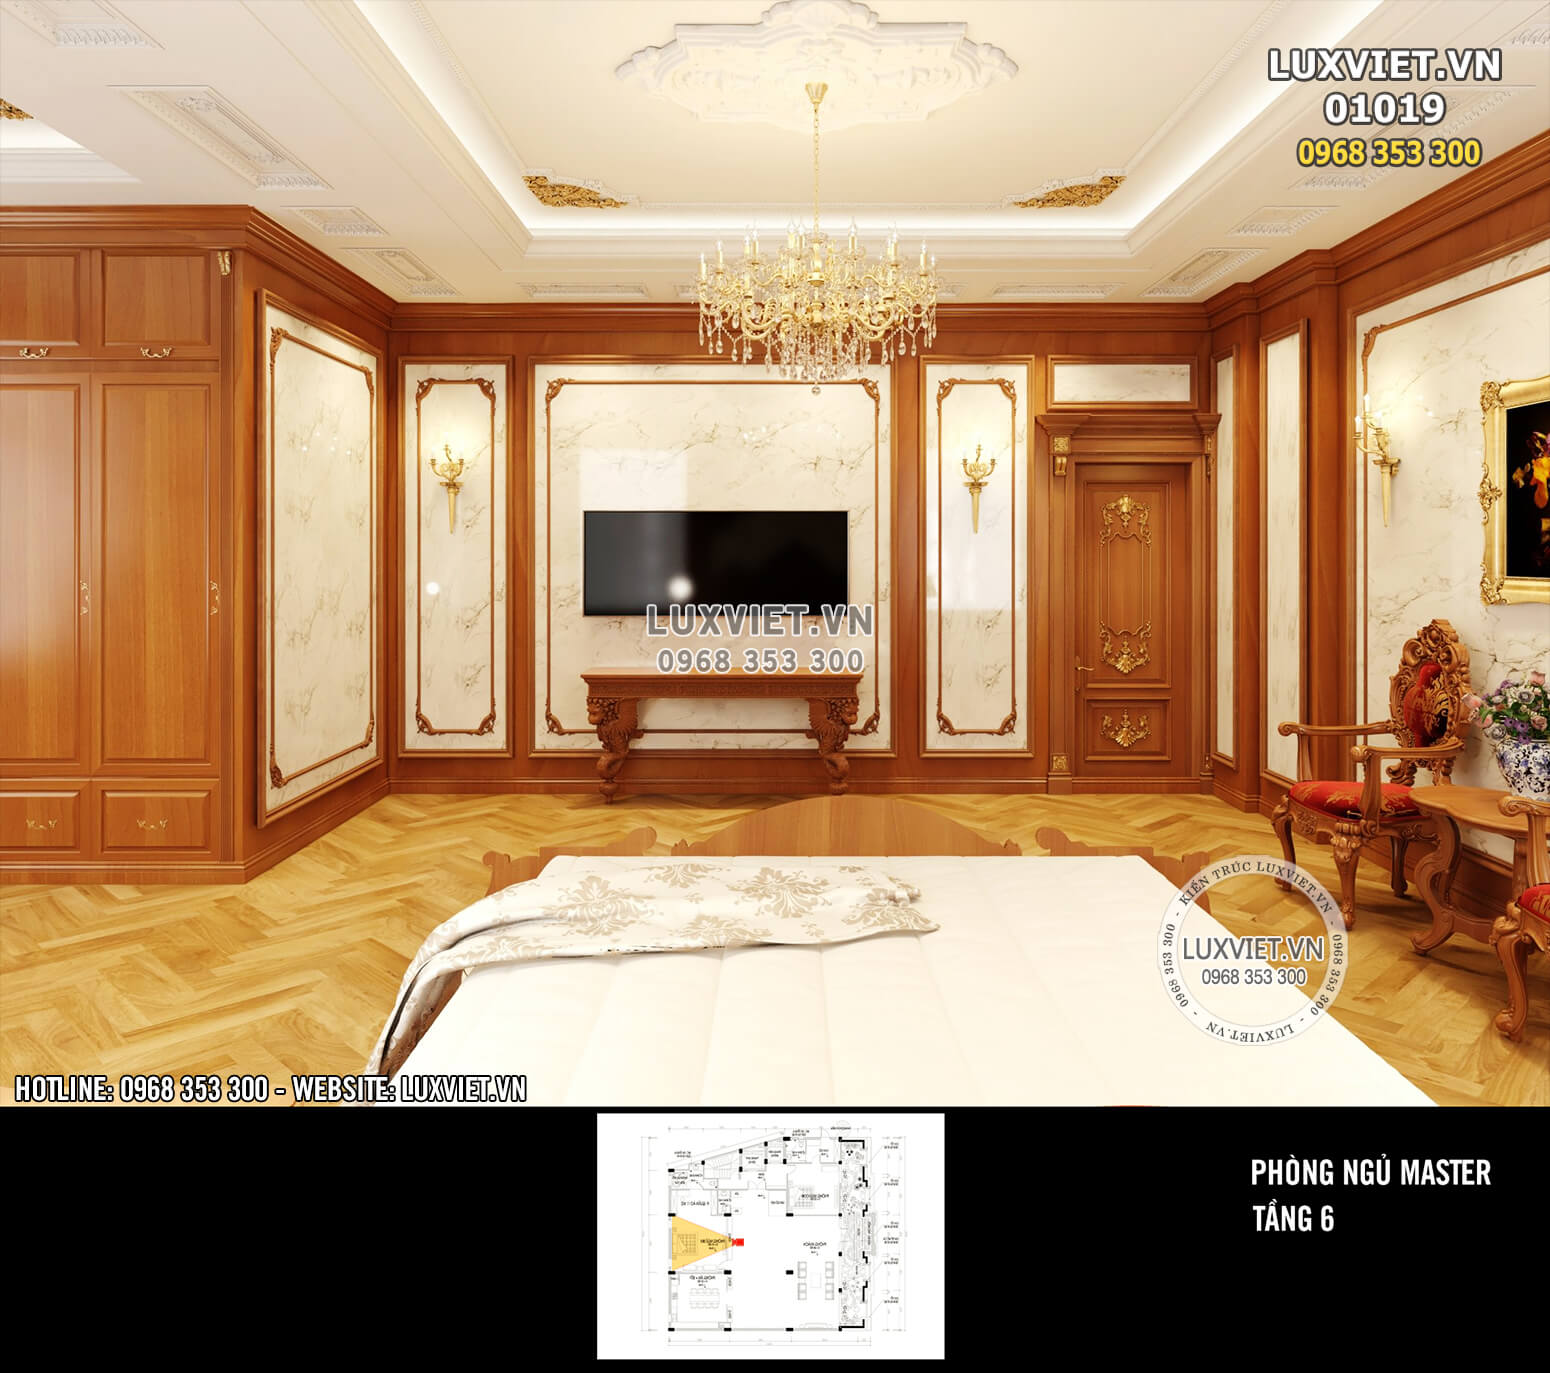 Hình ảnh: Thiết kế nội thất tân cổ điển đẹp bằng gỗ - LV 01019